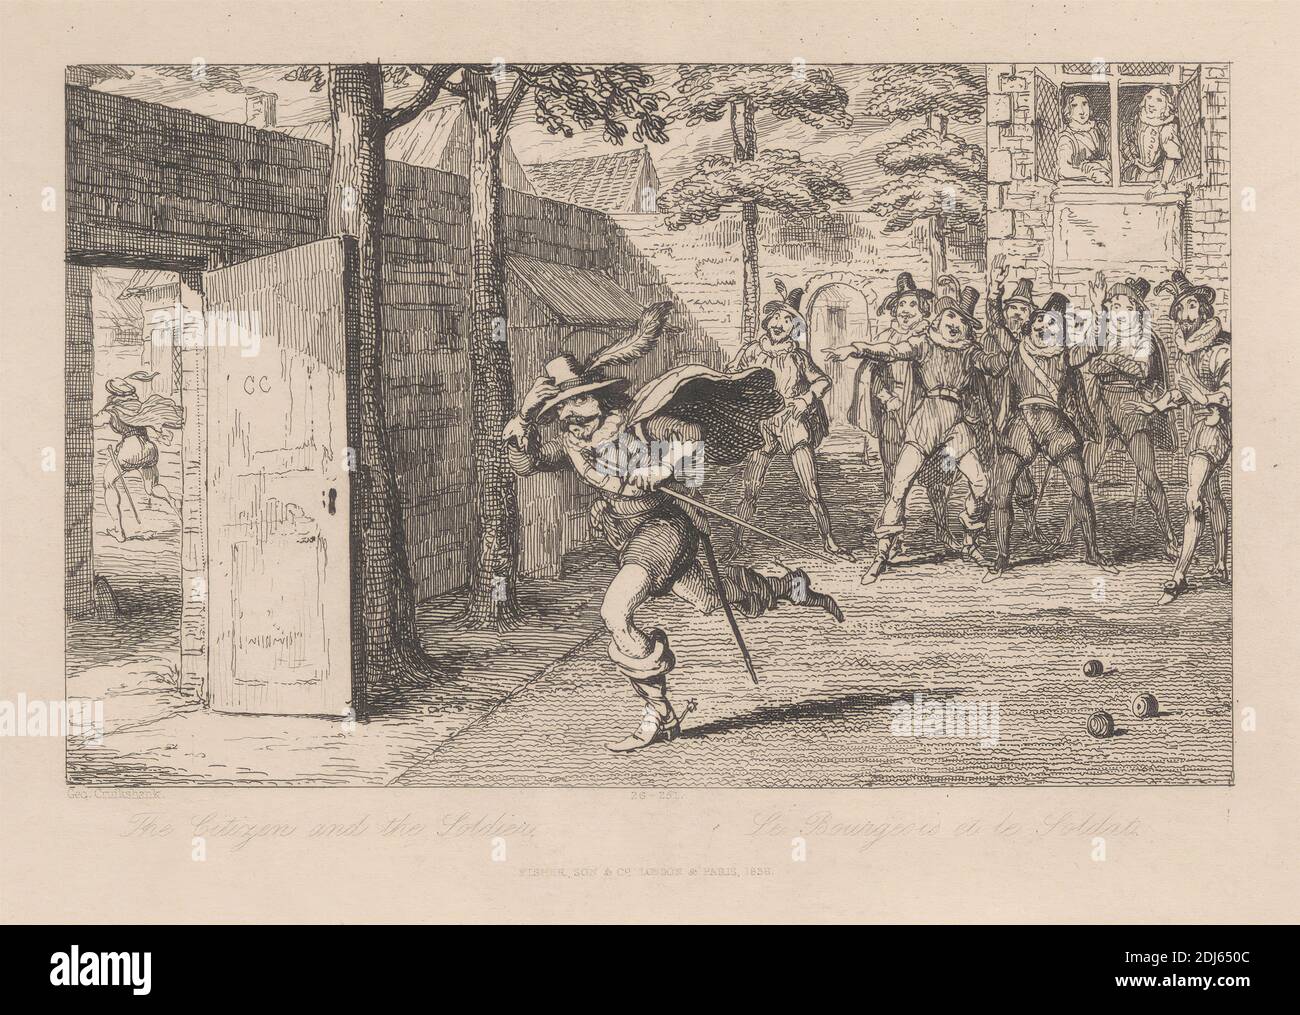 The Citizen and the Soldier, impresión hecha por George Cruikshank, 1792–1878, británico, 1838, grabado en papel de move de color crema, de textura media Foto de stock